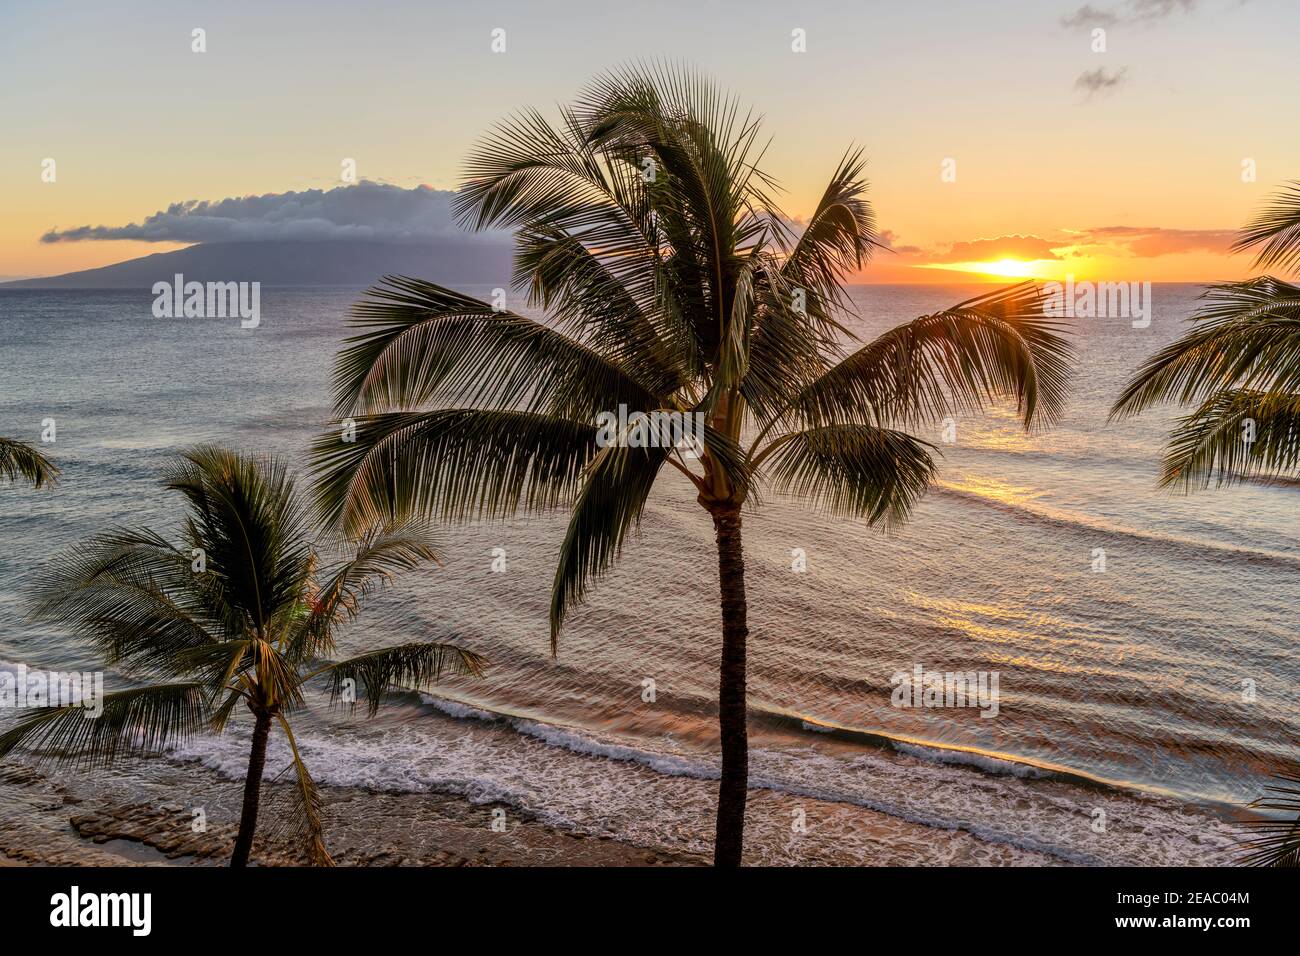 Sunset Island - EIN farbenfroher Sonnenuntergang an der Nordwestküste von Maui Island, mit Lanai Island am Horizont. Maui, Hawaii, USA. Stockfoto